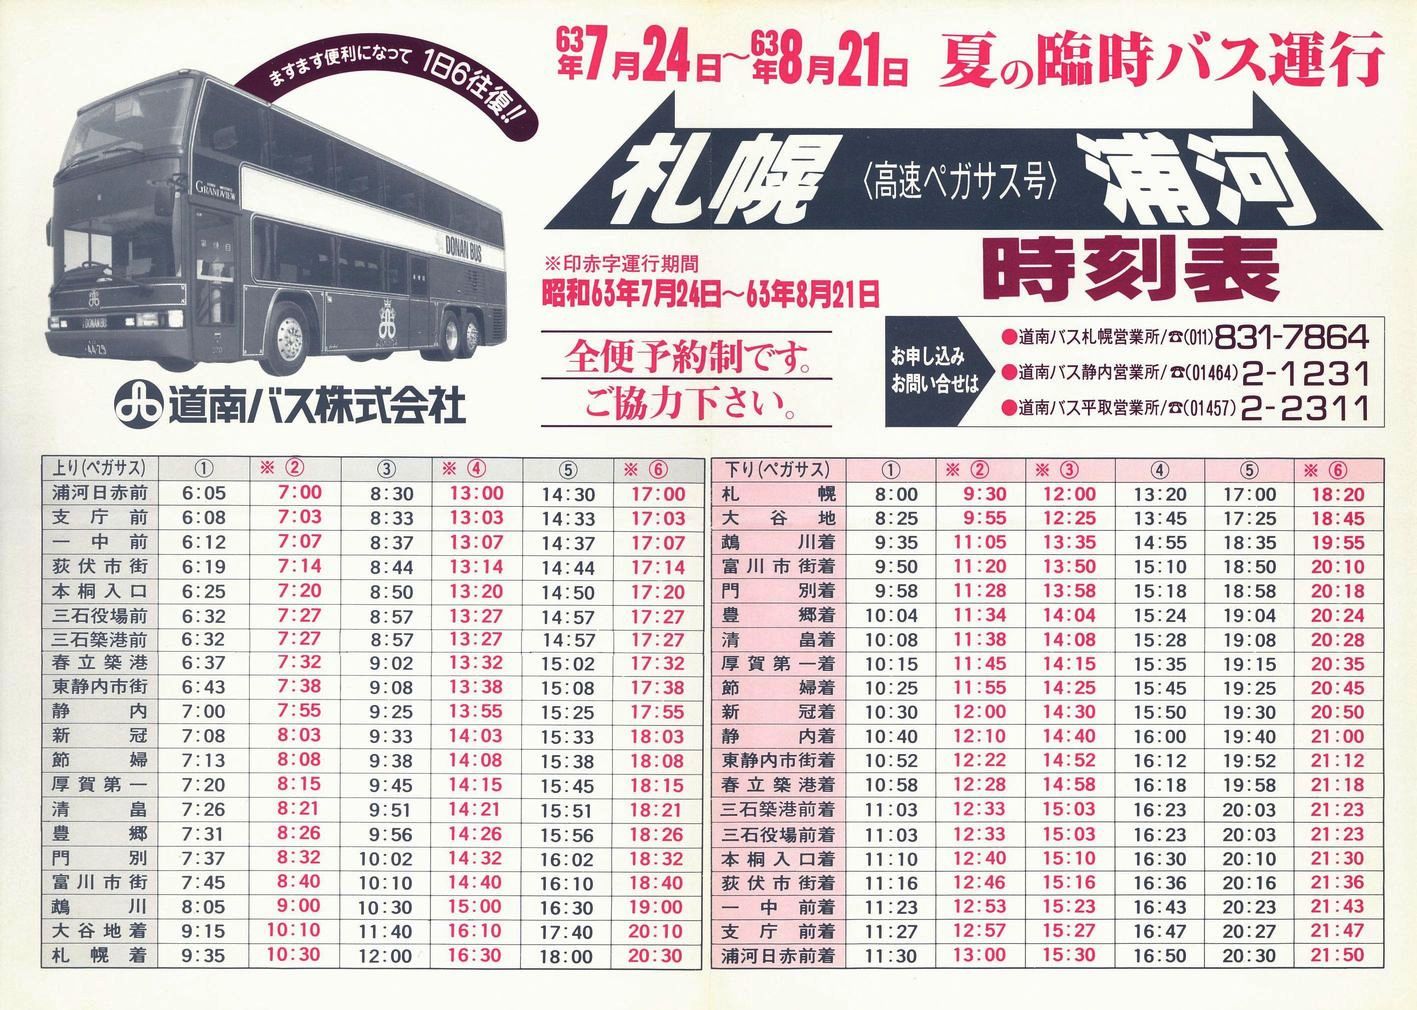 1988-07-24改正_道南バス_高速ペガサス号時刻表